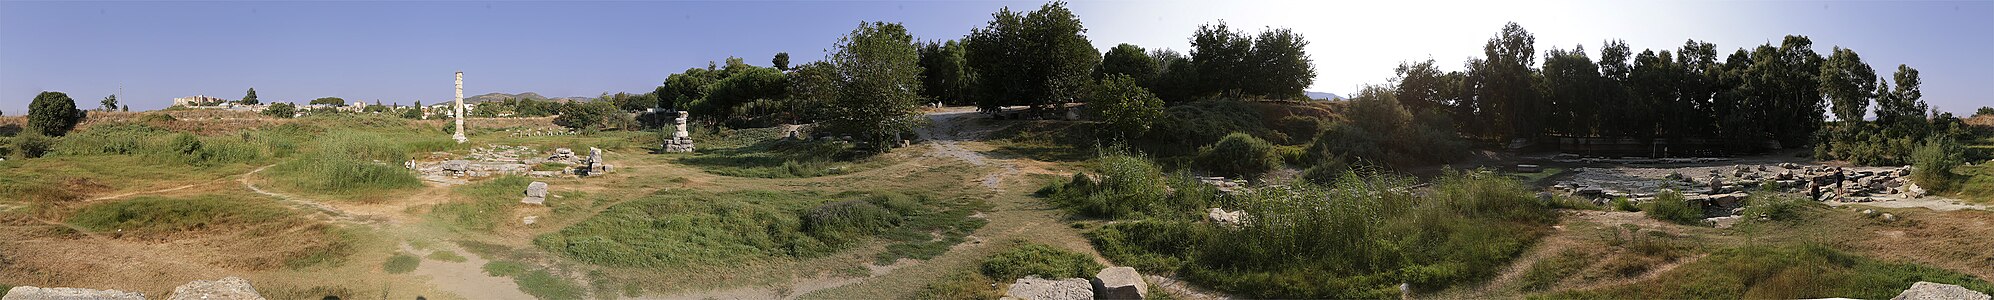 Сучасний панорамний вид місця розташування храму